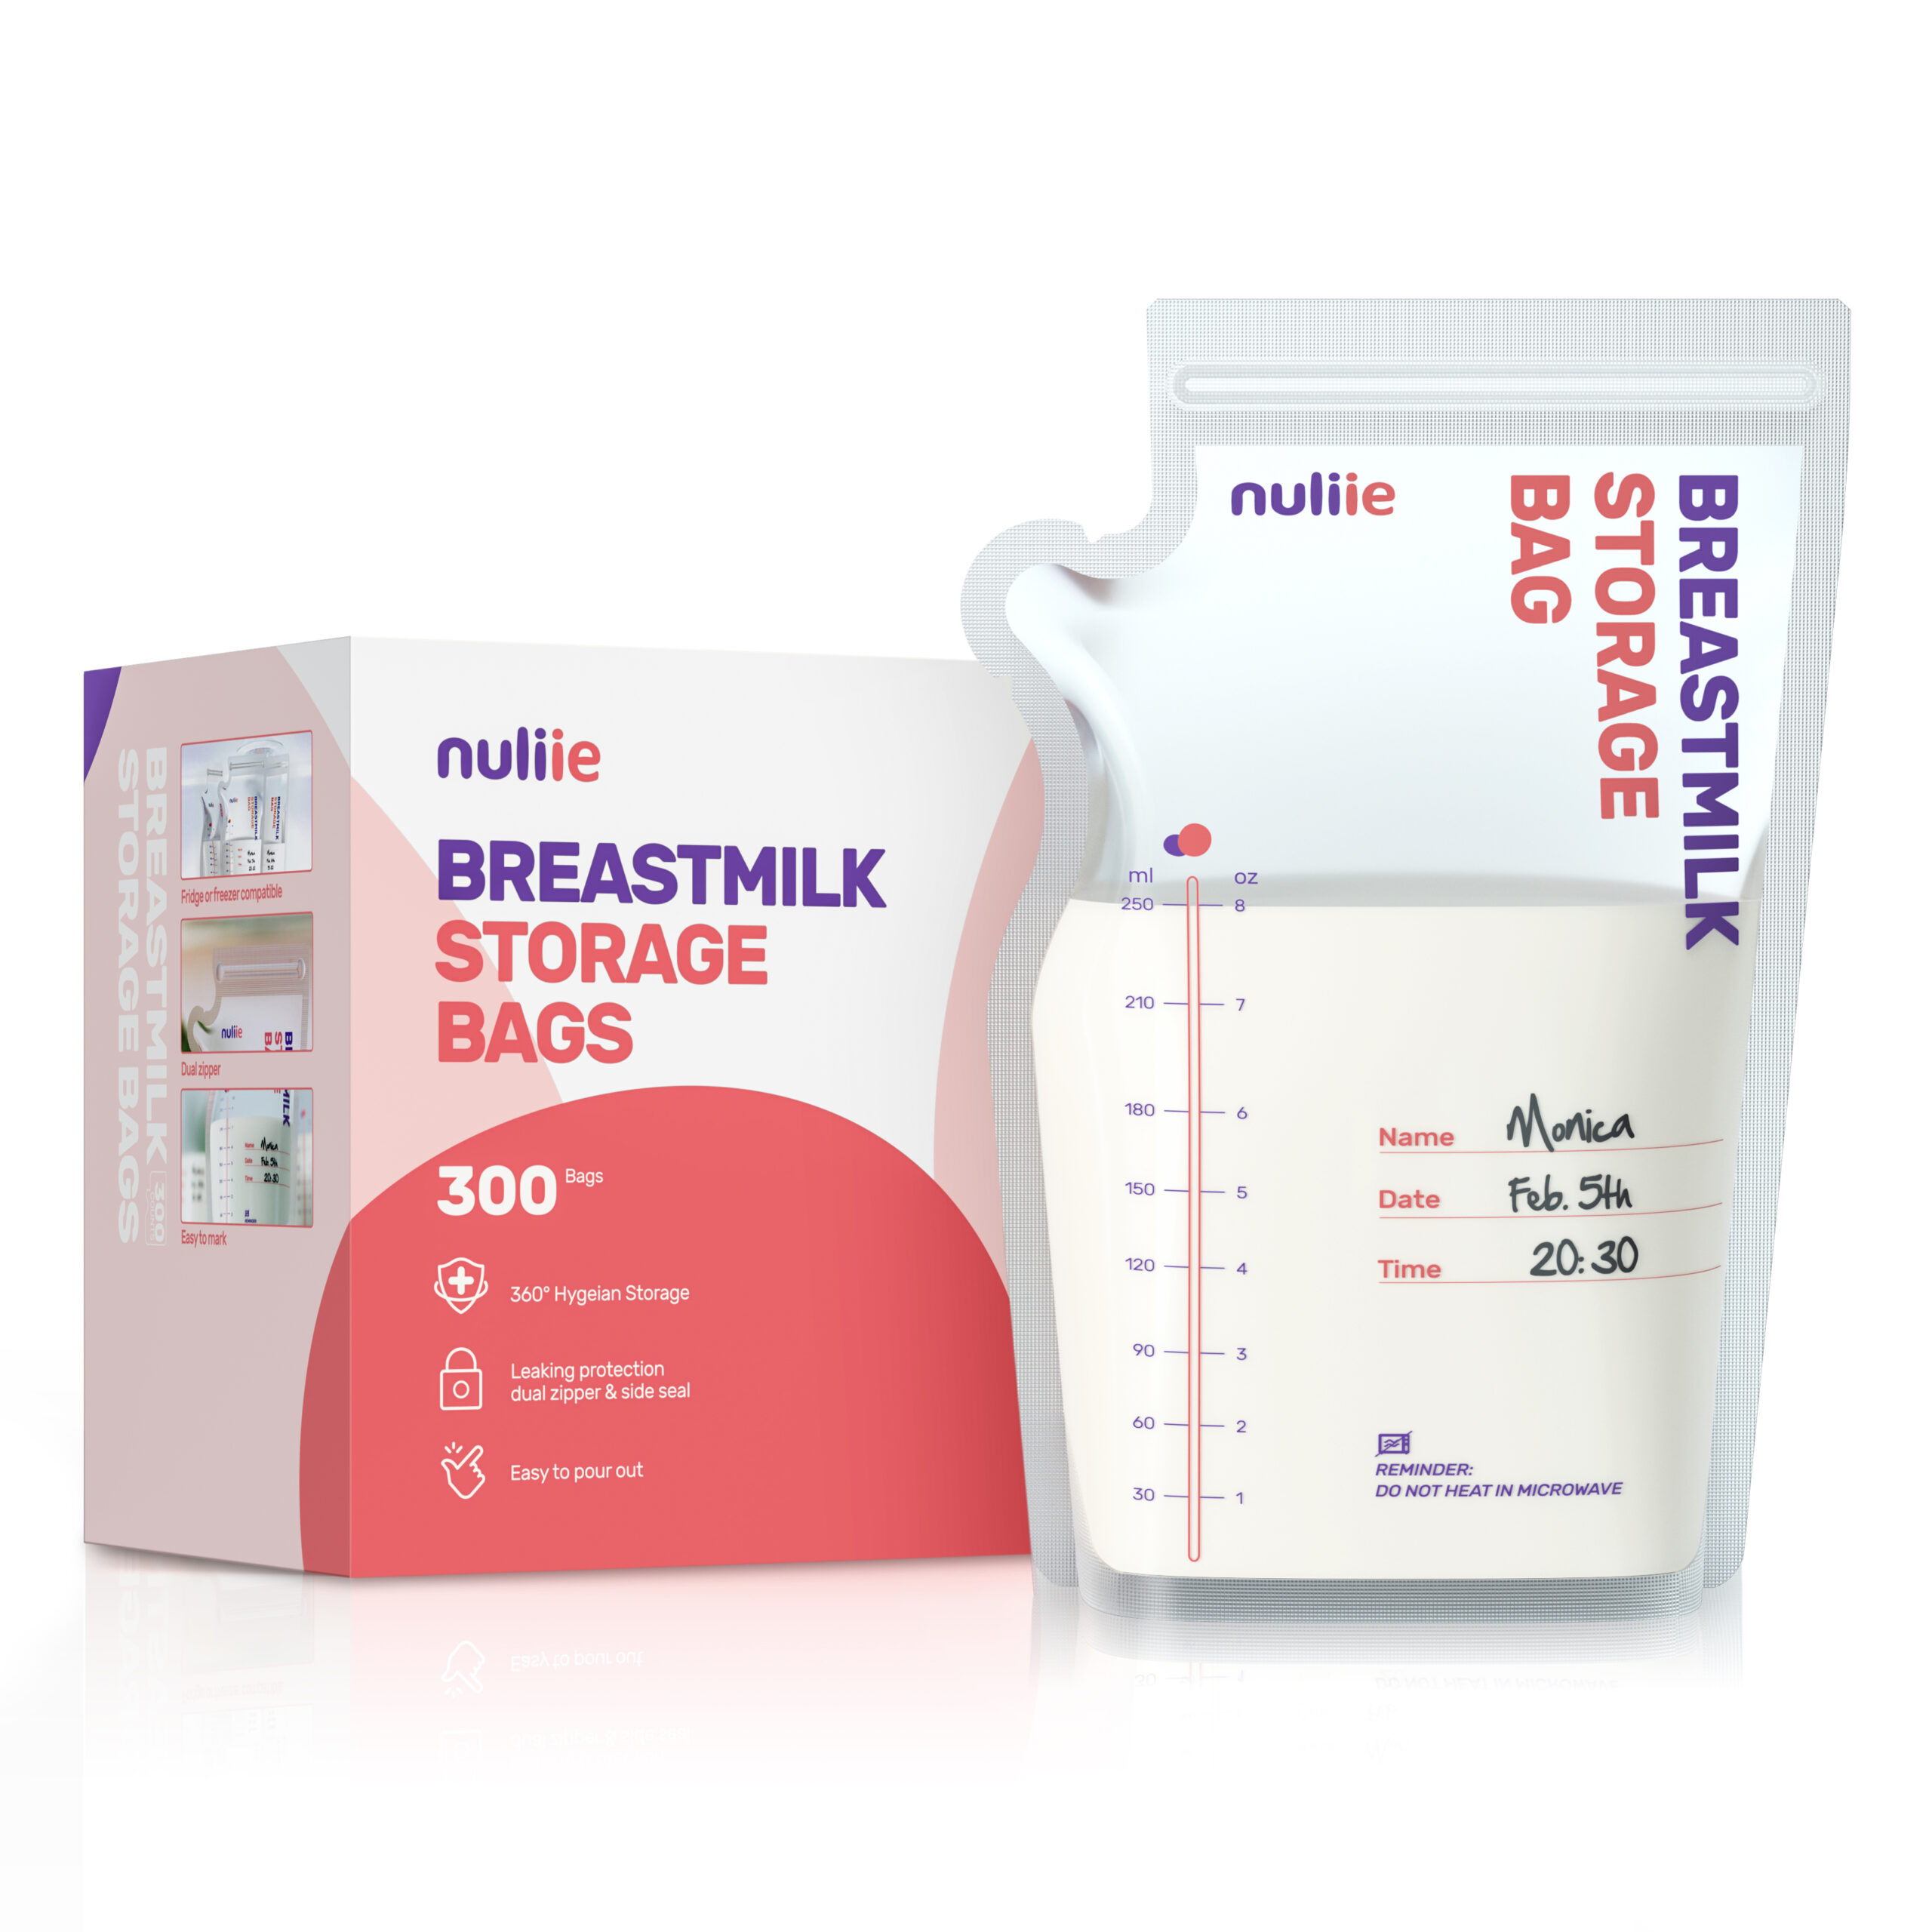 300 Pcs Breastmilk Storage Bags - Nuliie